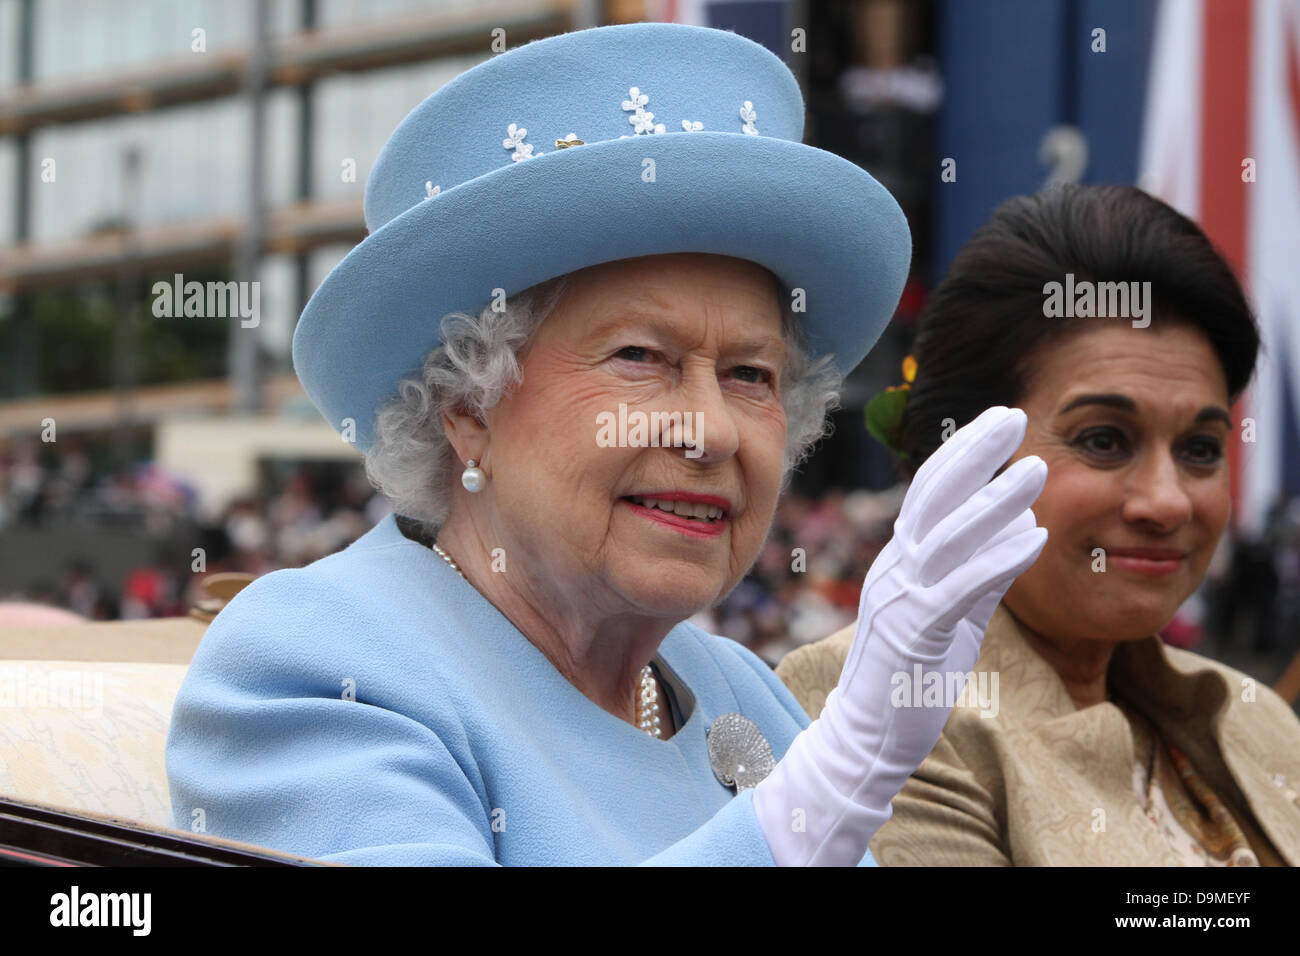 Son Altesse Royale la Reine à Royal Ascot Berkshire Angleterre Juin 2013 Banque D'Images